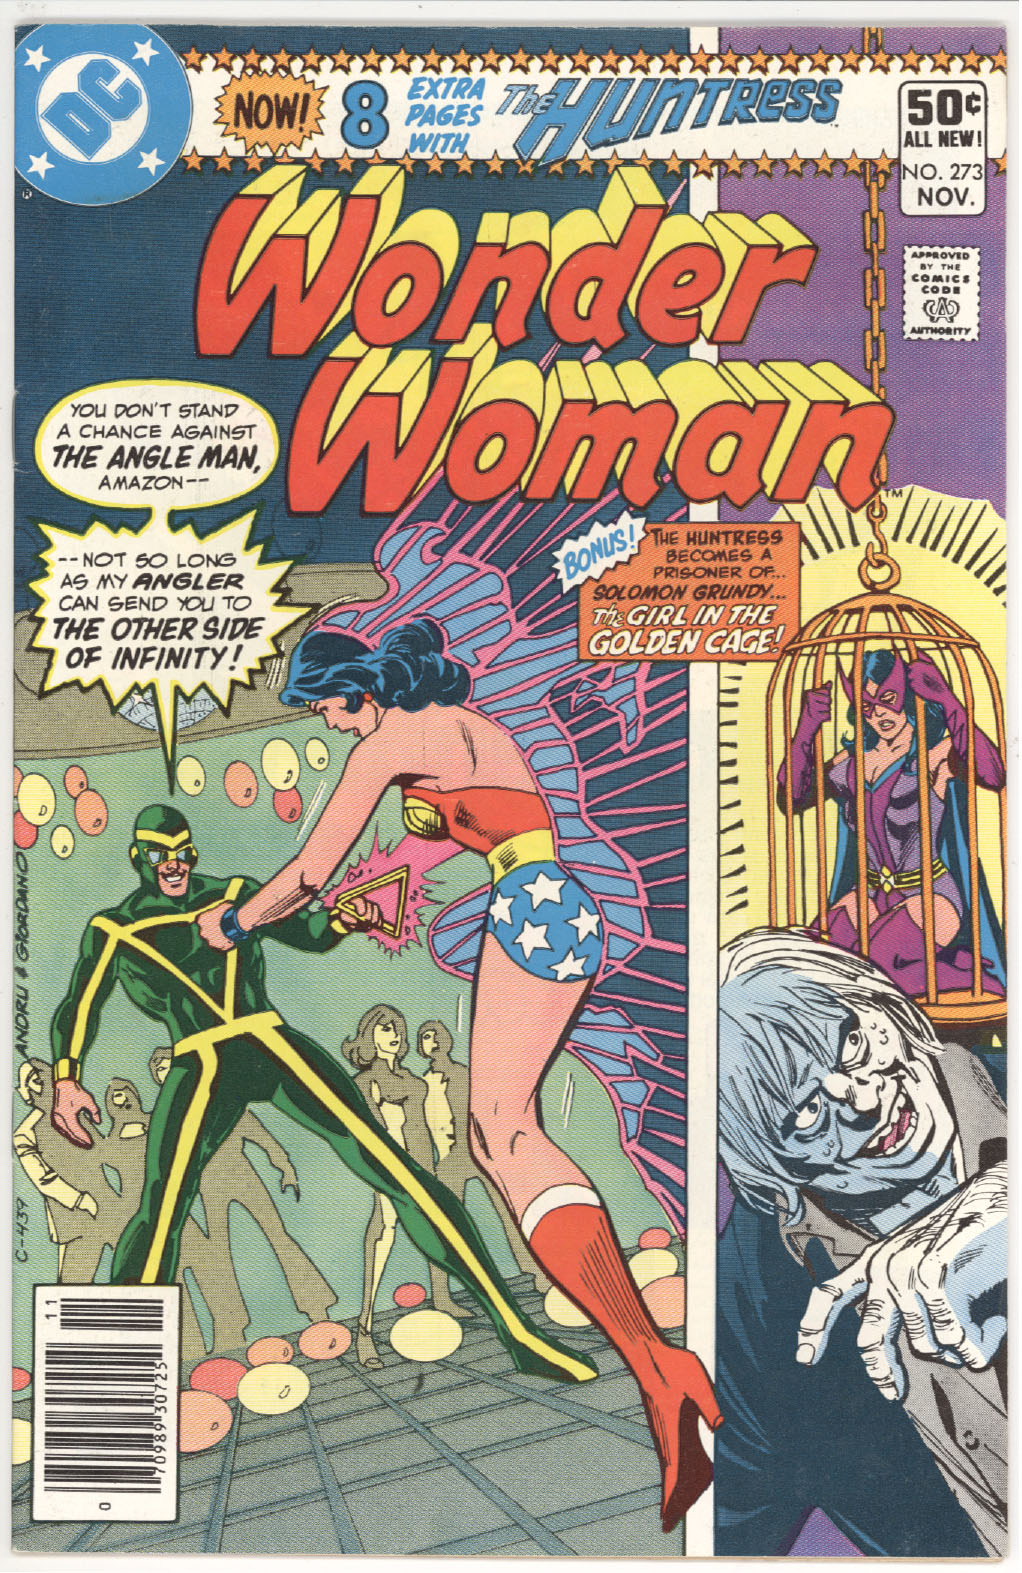 Wonder Woman #273